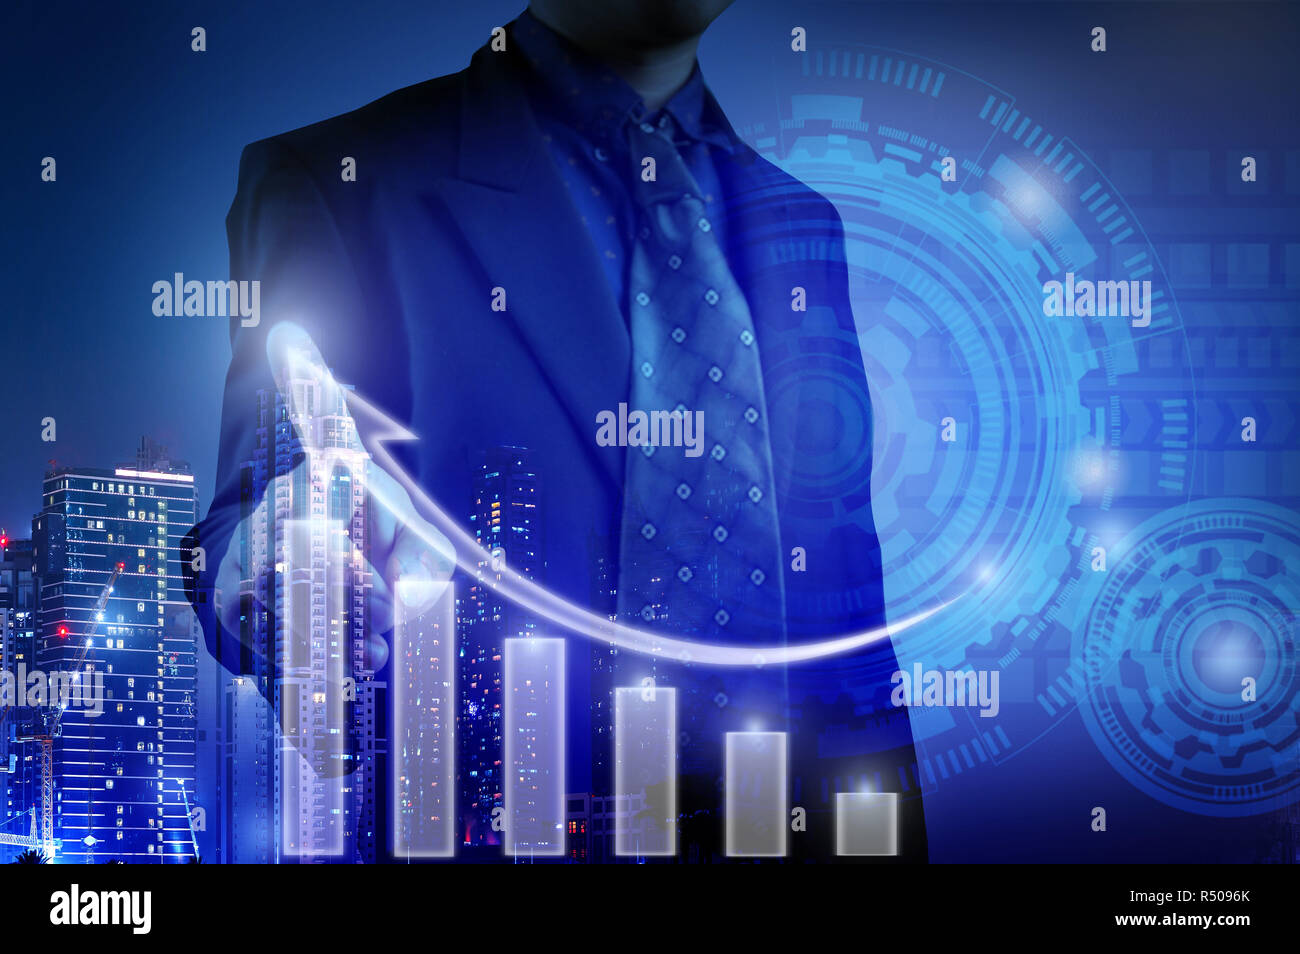 Business Mann am weißen Balken Diagramm für das Wachstum des Unternehmens Konzept und prüft Graphen durch interaktive Anzeige Hintergrund Gebäude Nacht gesehen, s Stockfoto